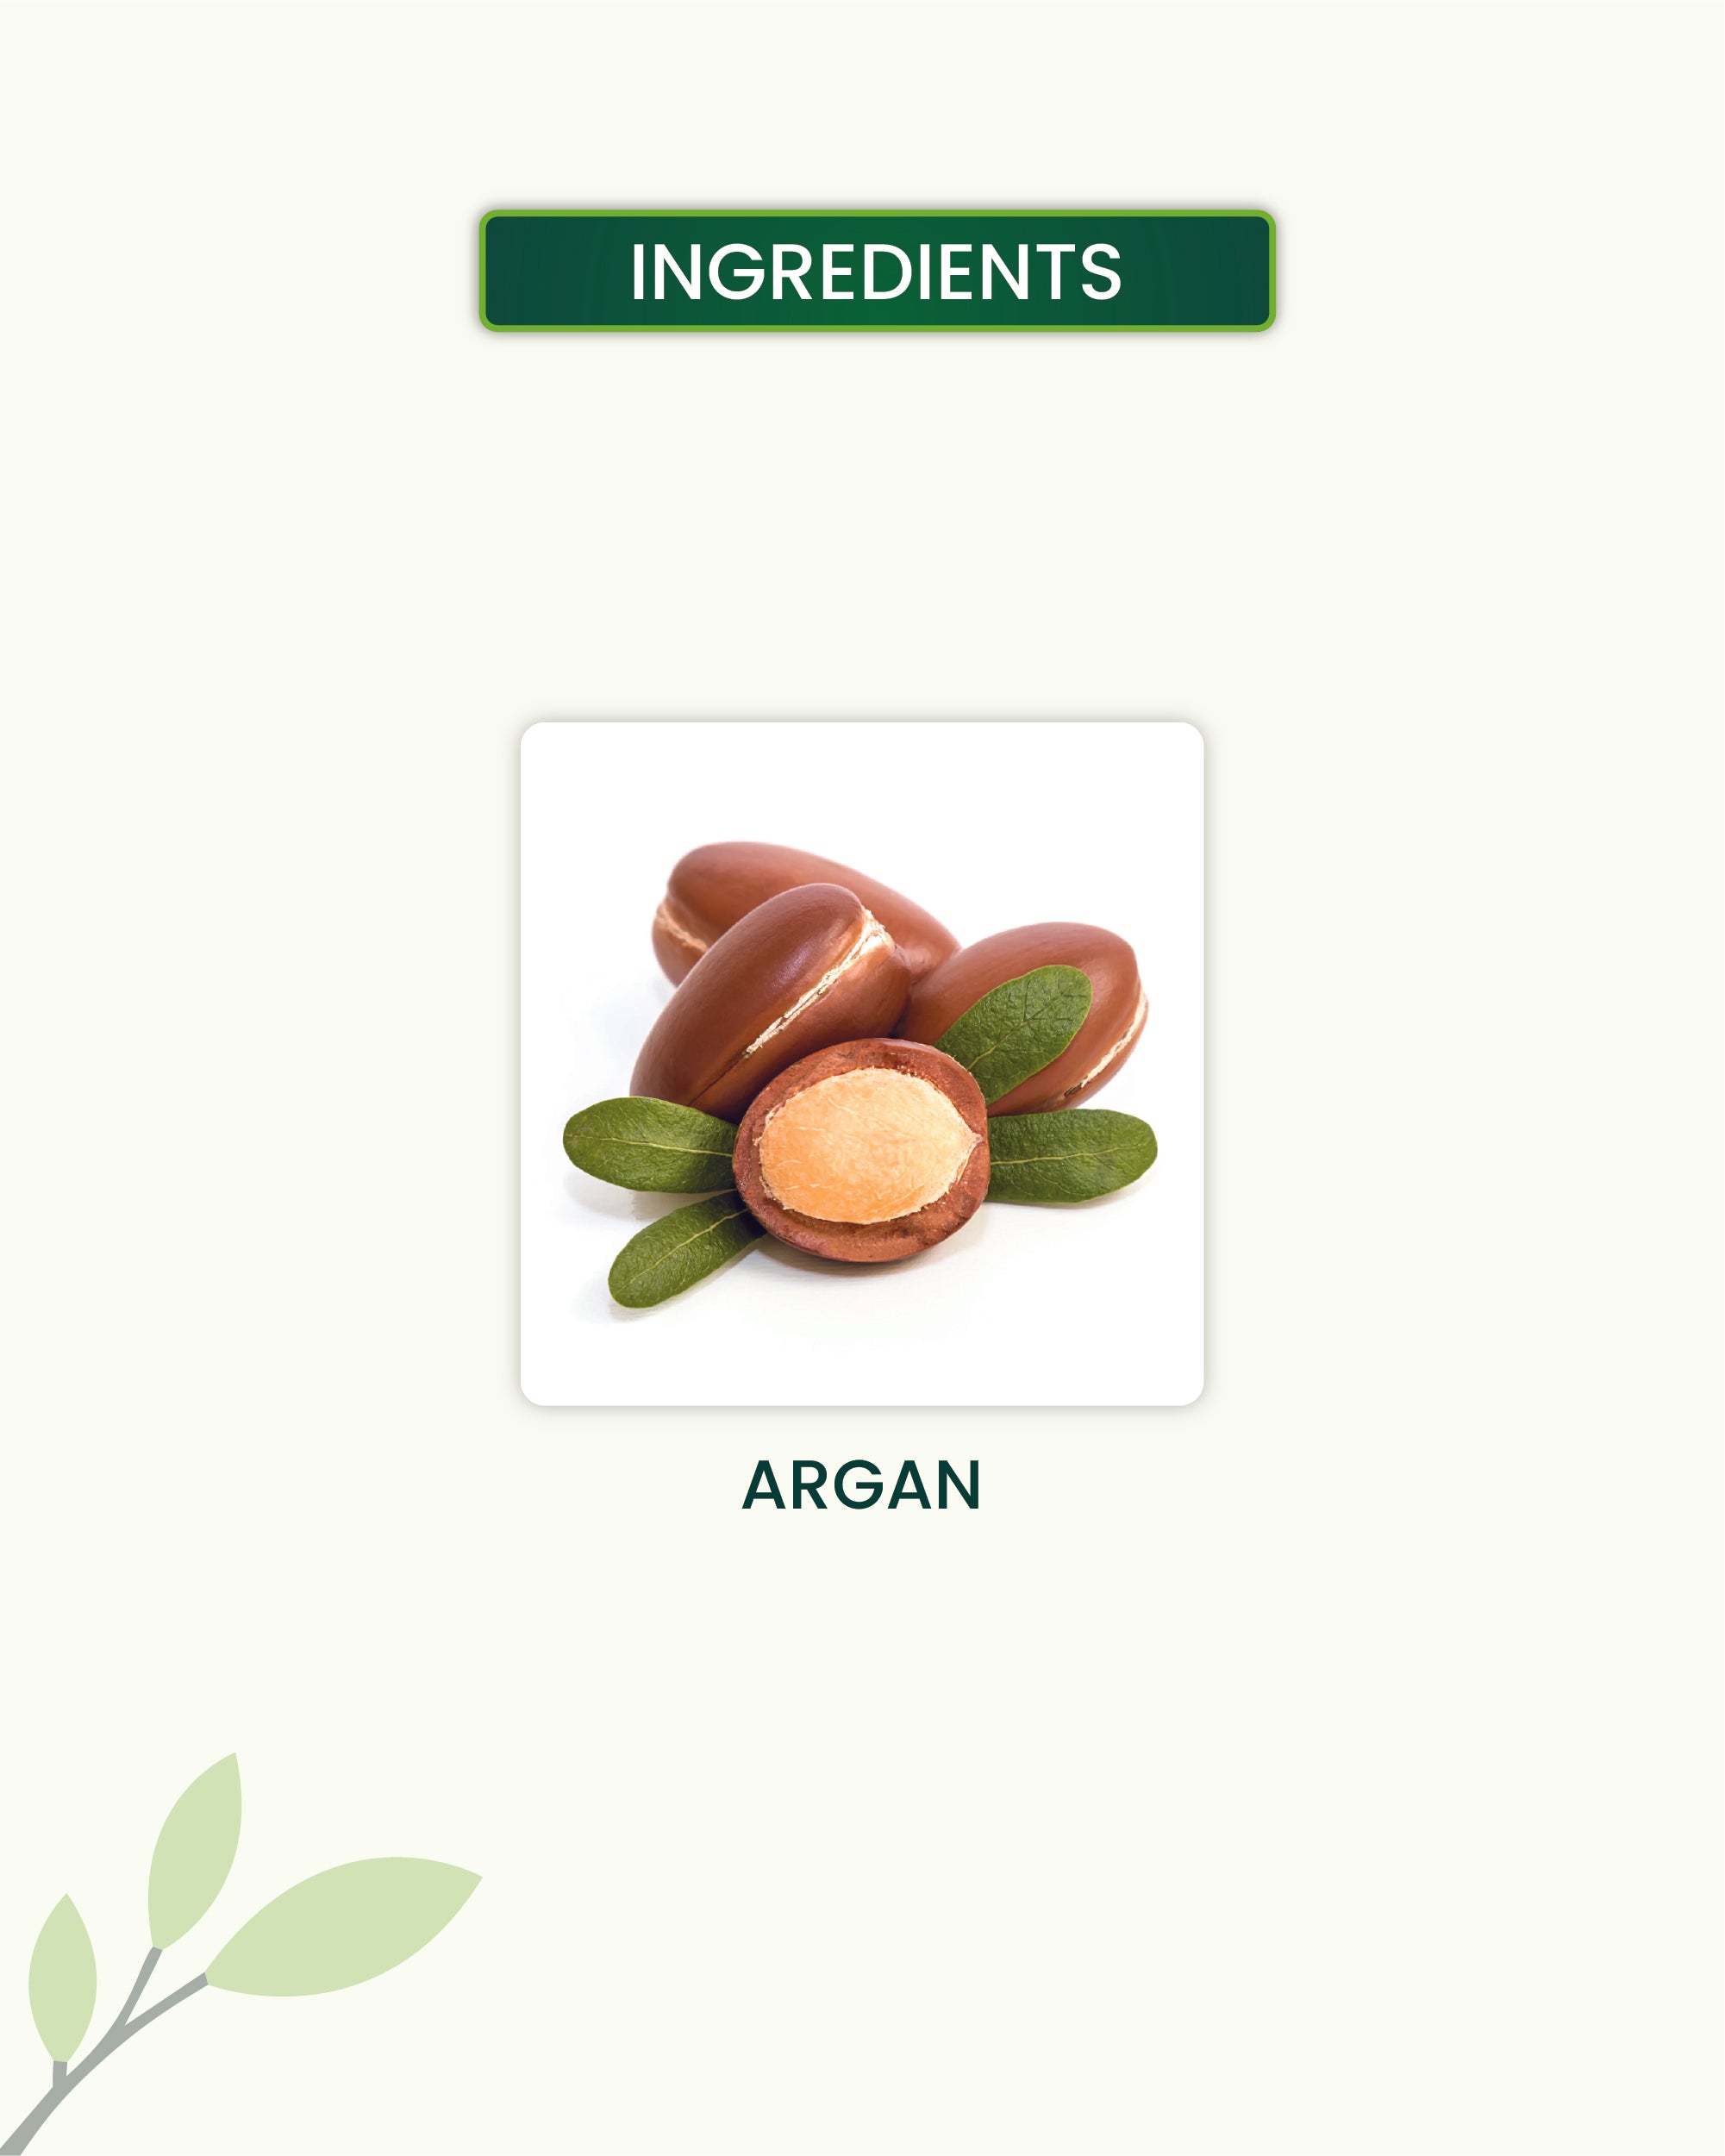 Moroccan Argan Oil Key Ingredients